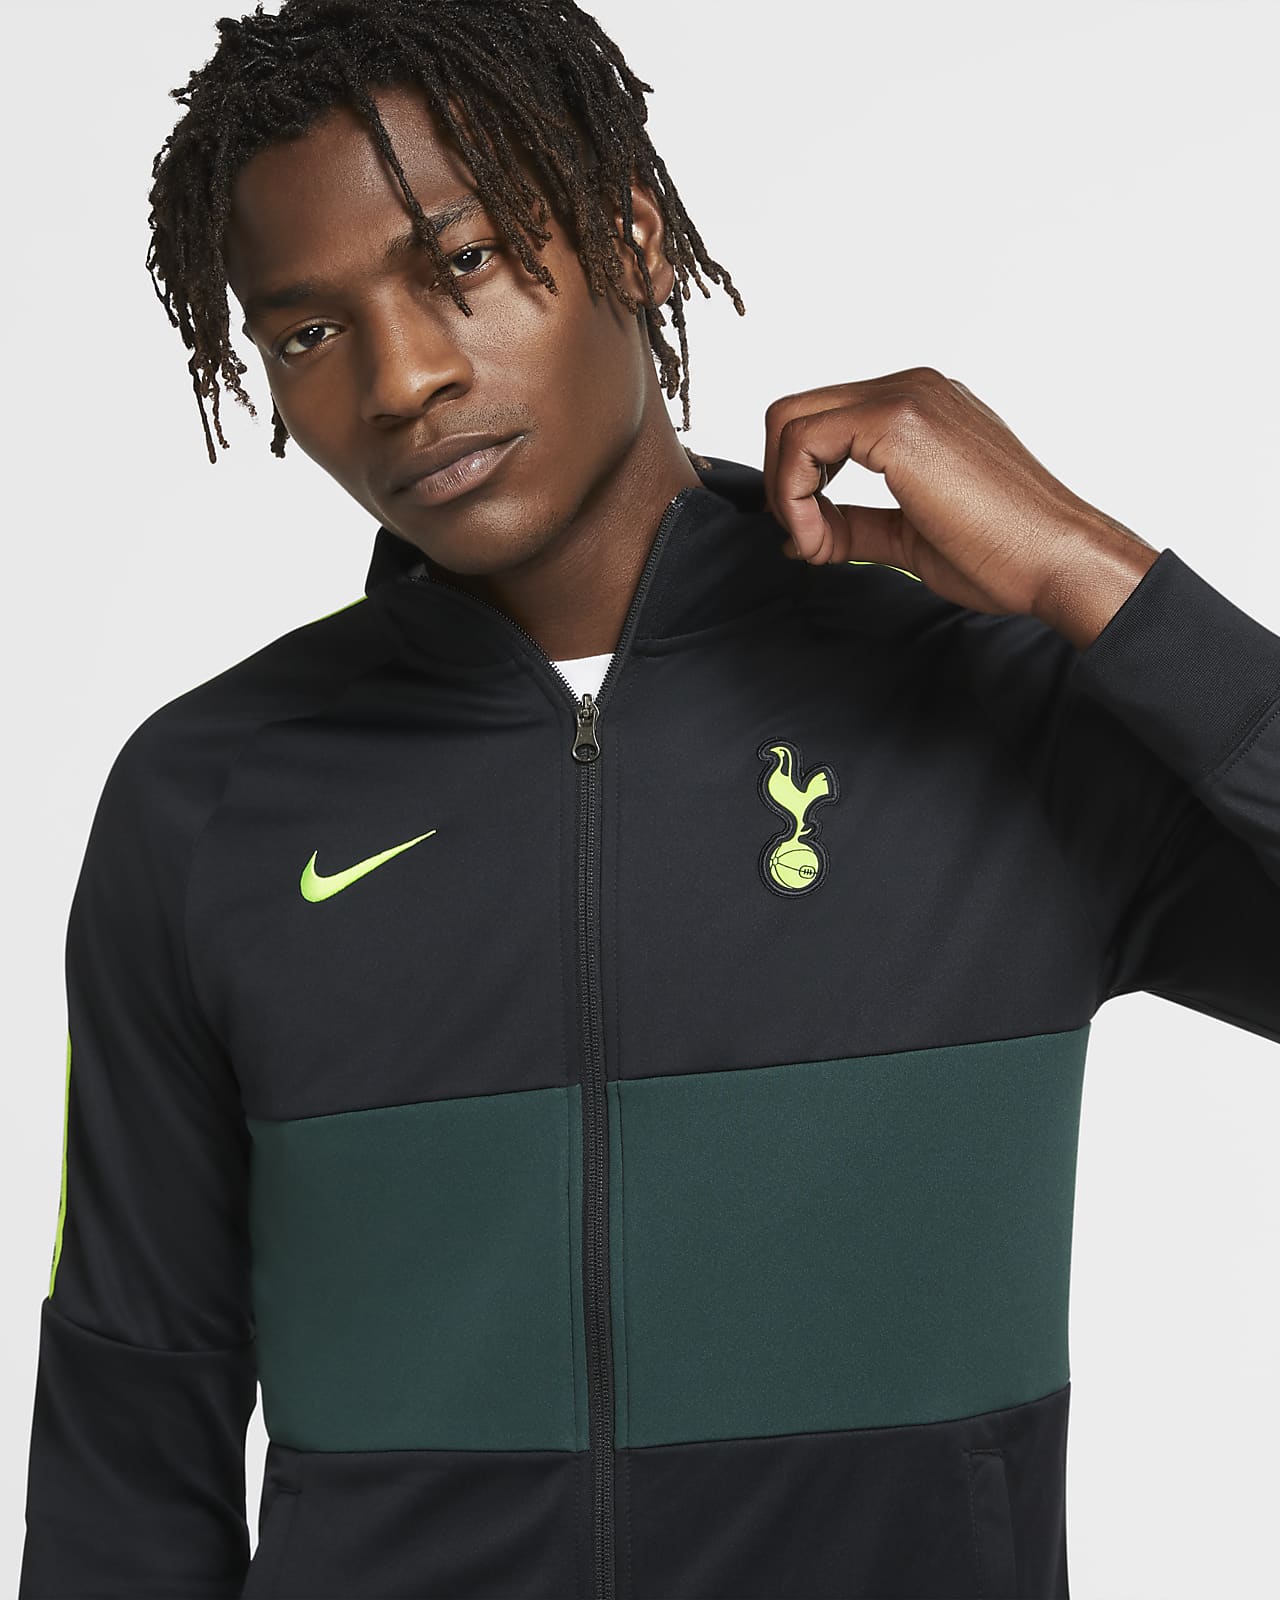 Tracksuit Jacket. Nike LU